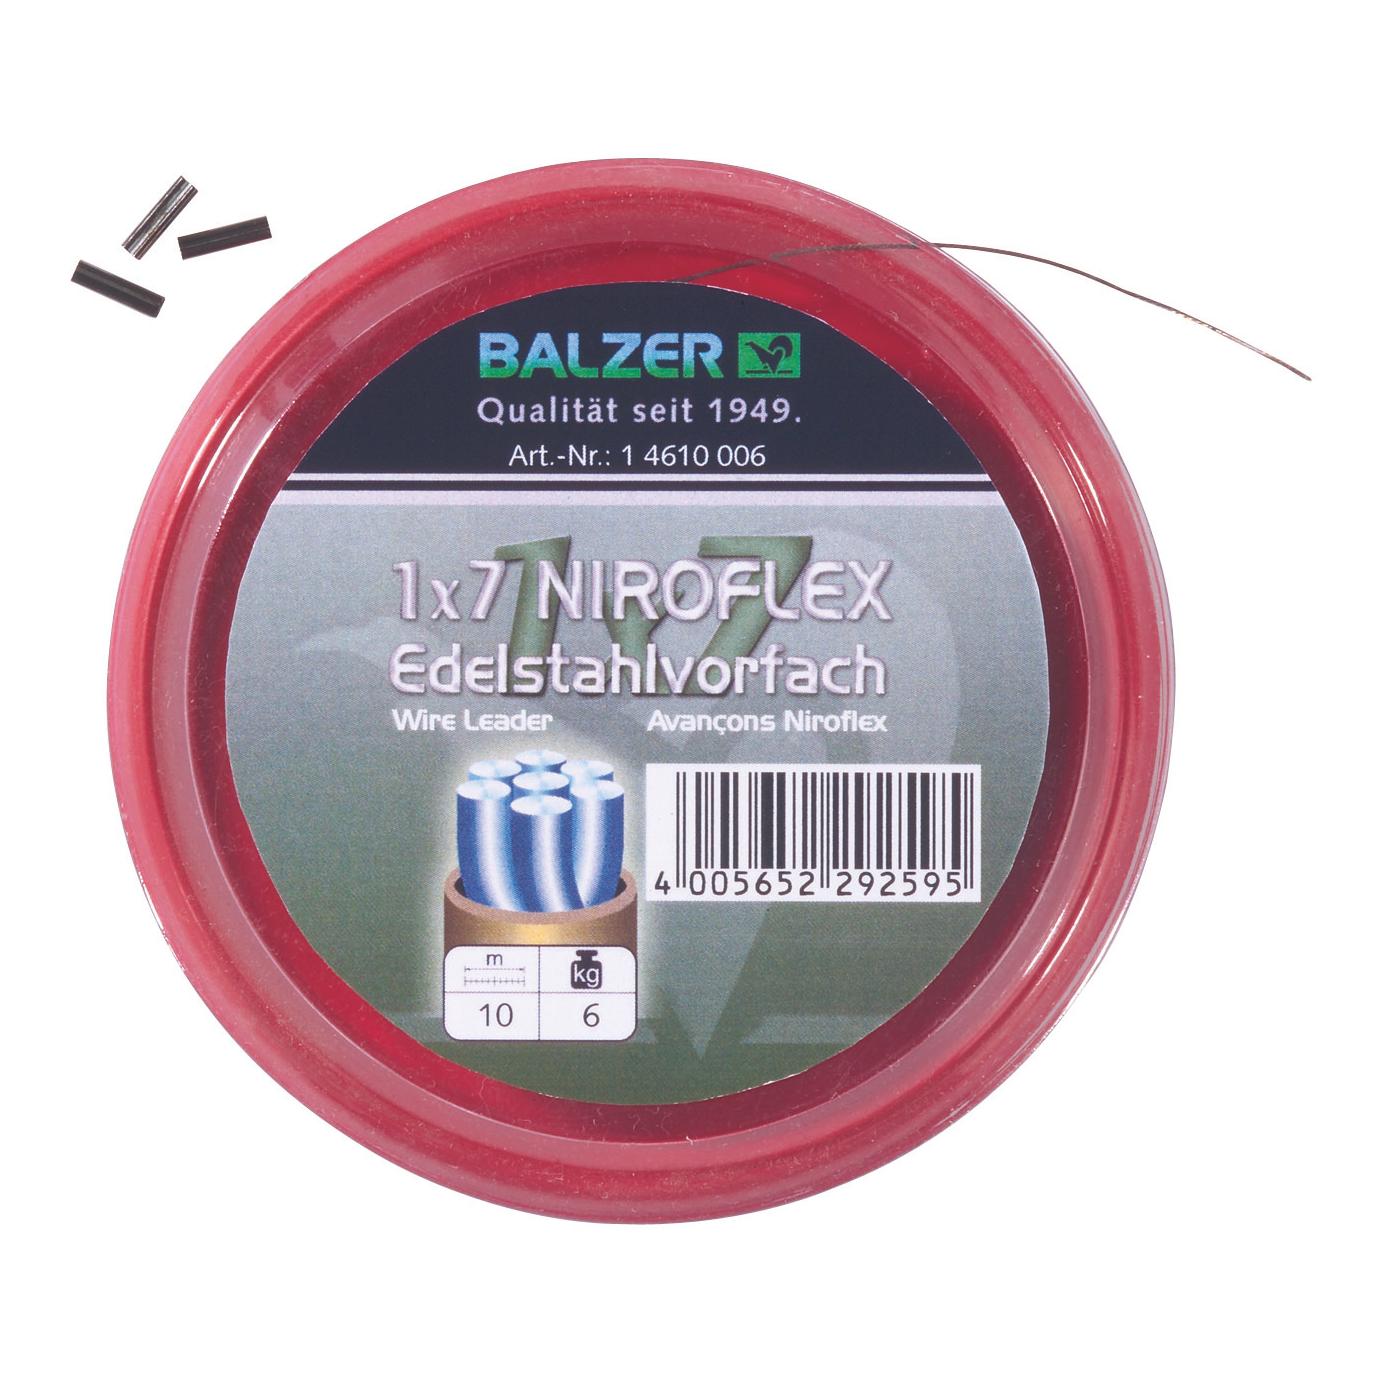 Image of Balzer 1x7 Niroflex Edelstahlvorfach 10m bei fischen.ch